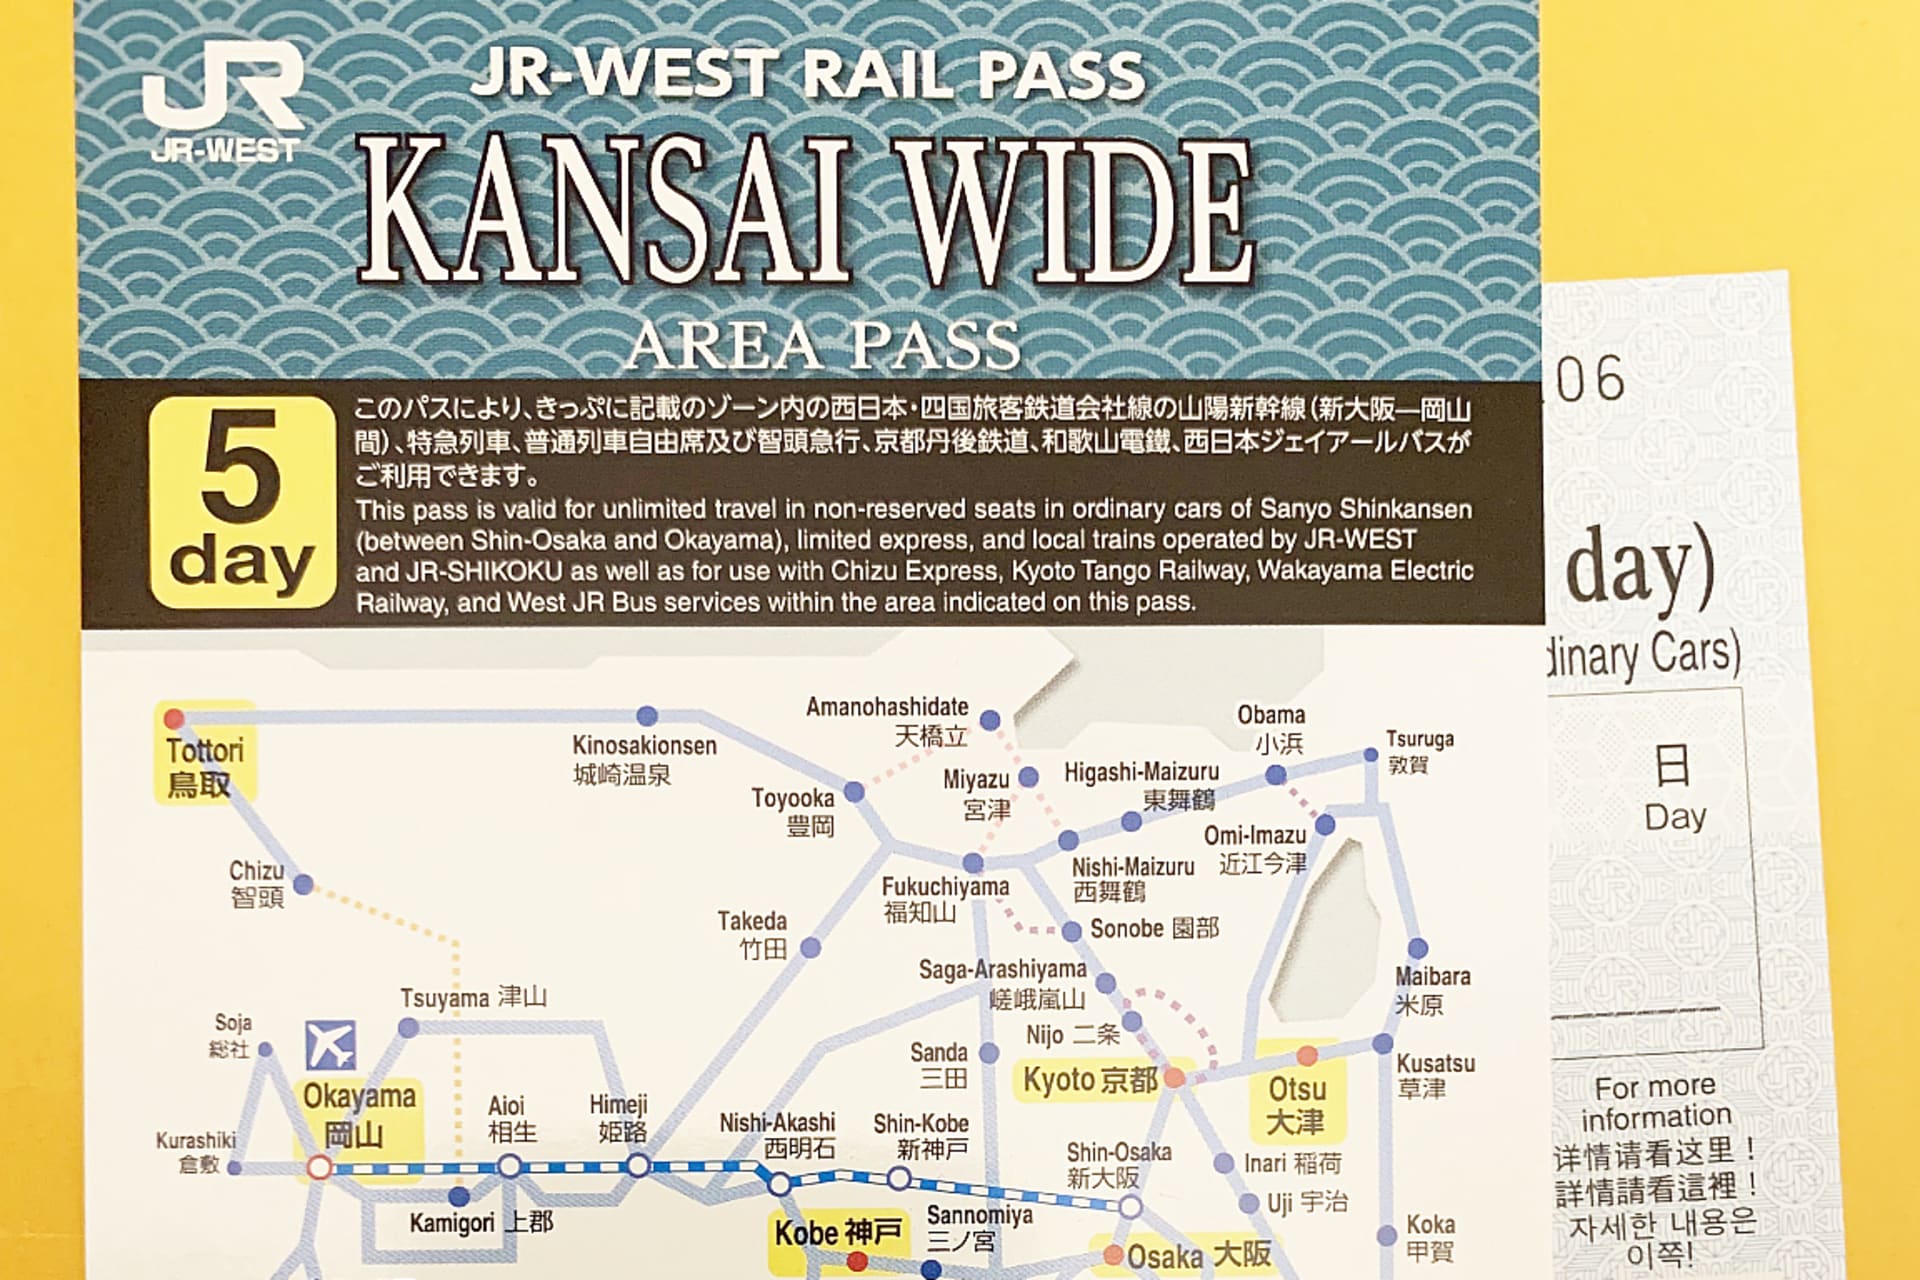 JR Kansai WIDE Area Pass (2).jpg